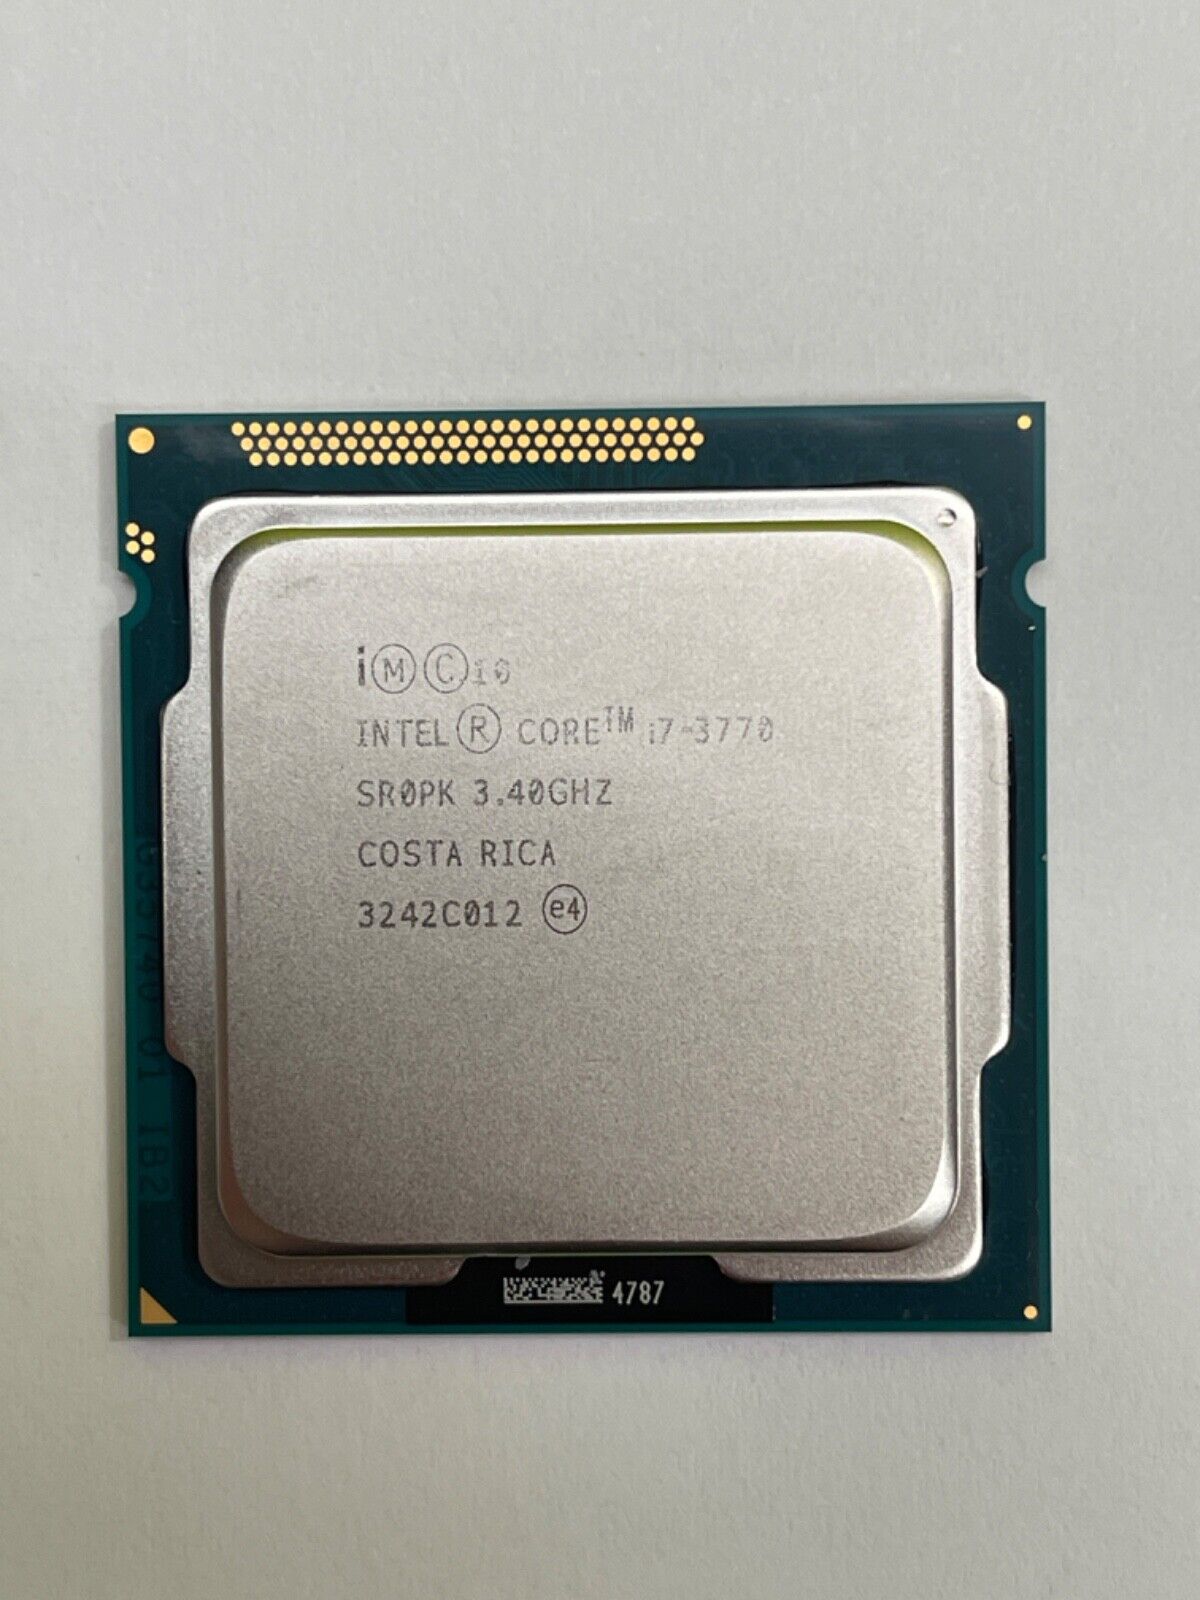 Intel Core i7-3770 3.4GHz LGA 1155/Socket H2 SR0PK 8MB Quad Core Desktop CPU